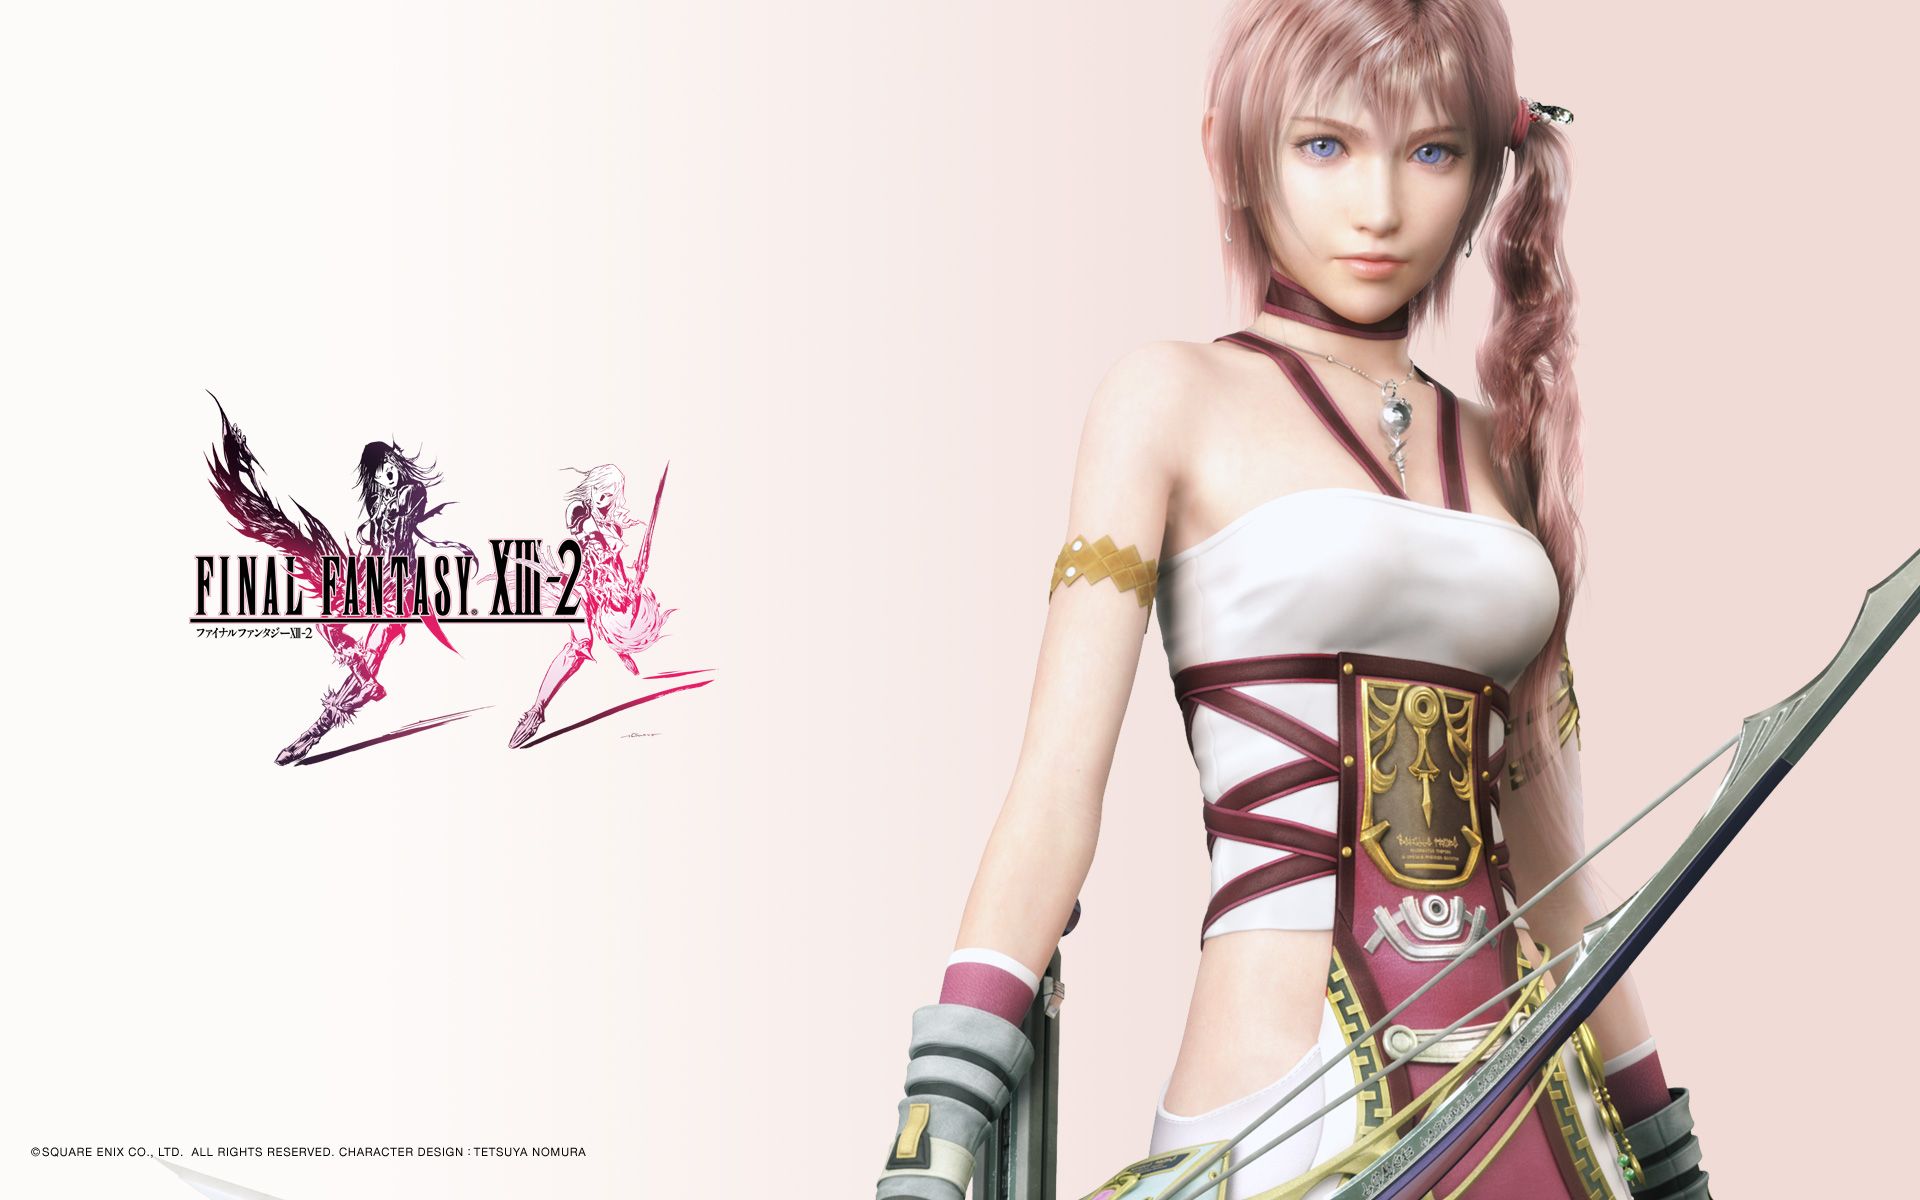 Final Fantasy XIII-2 Wallpapers - Lightning, Serah, Noel, Mog